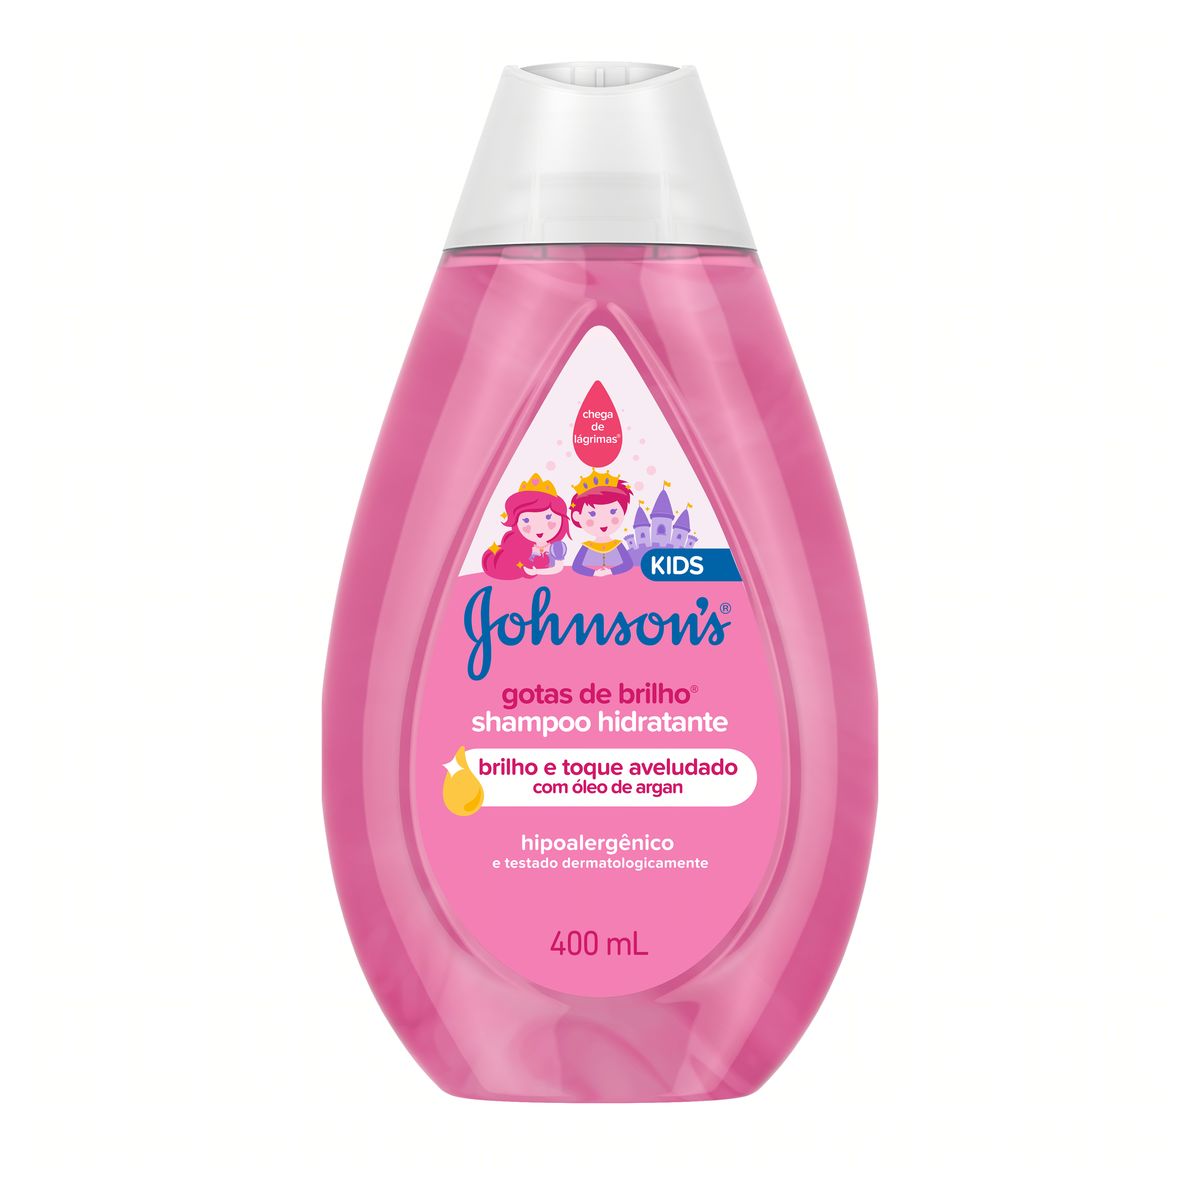 Shampoo Johnson's Gotas de Brilho 400 ml